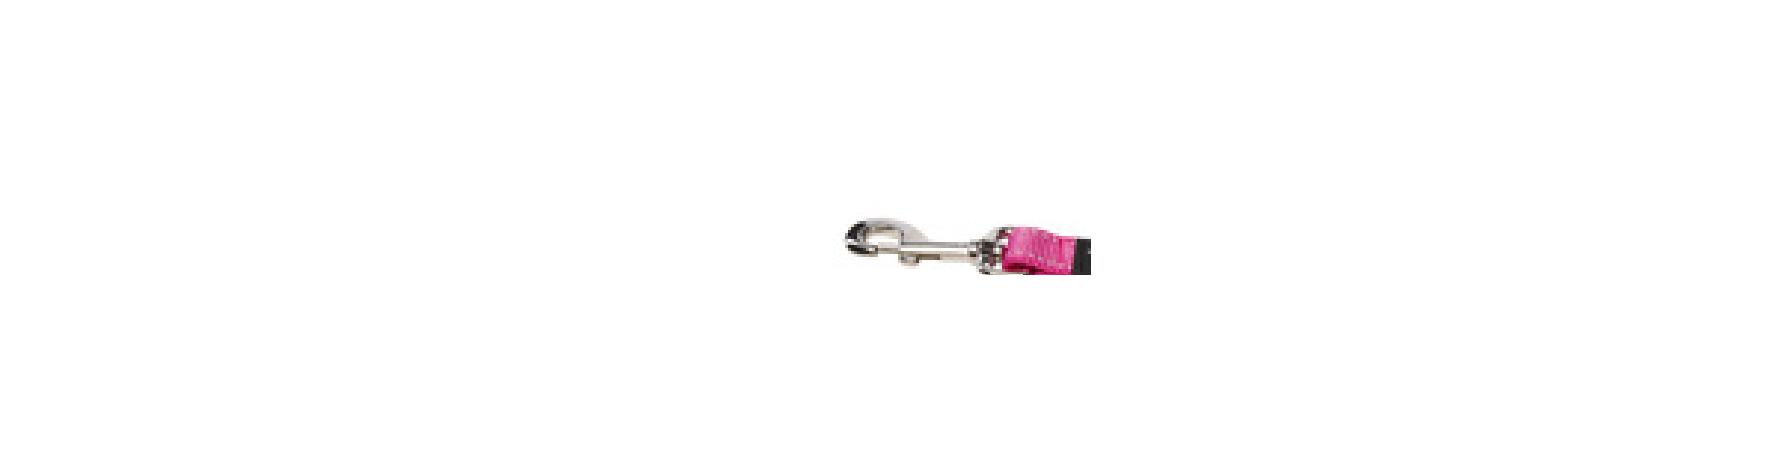 Rogz Ремень-сворка для двух собак серия Utility размер S ширина 11 мм розовый DOUBLE SPLIT LEAD HLS14K 0,034 кг 38276